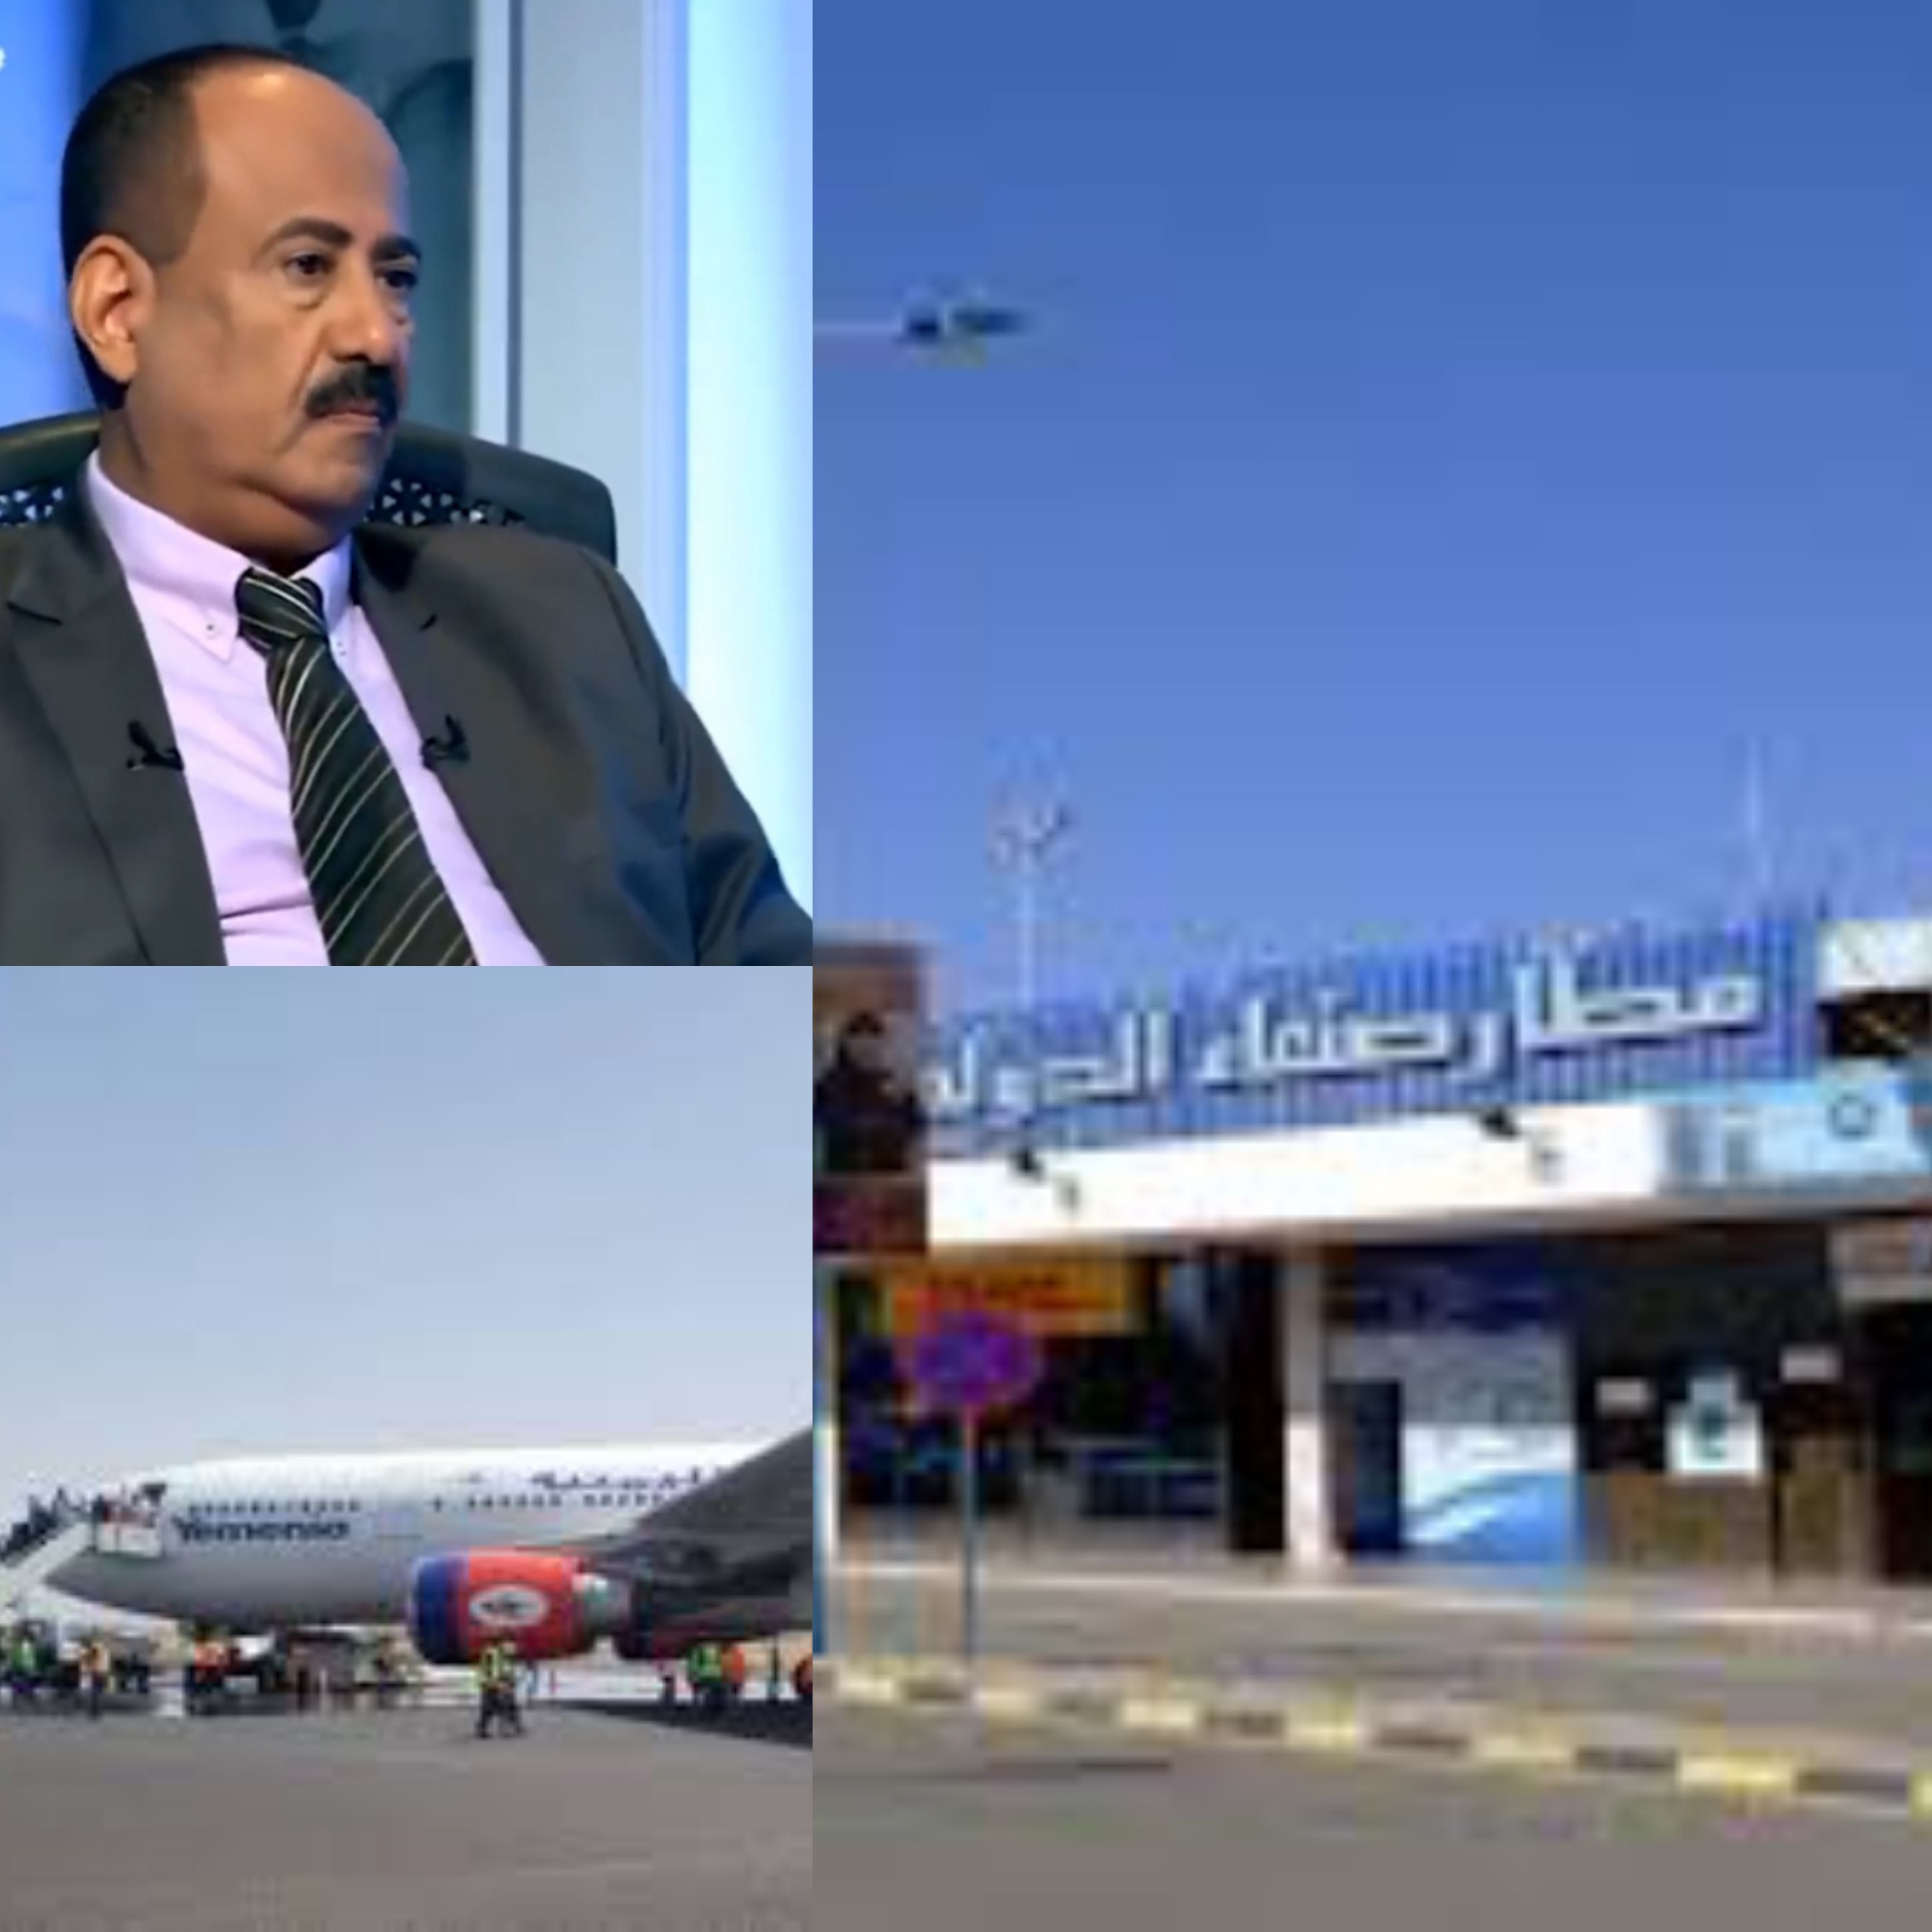 اليمنية تكشف عن الطرف الذي يعيق ويمنع رحلاتها أمام المسافرين والمرضى من صنعاء الى الاردن ومصدر يفضح الحوثيين في فبركة الاخبار الزائفة والكاذبة